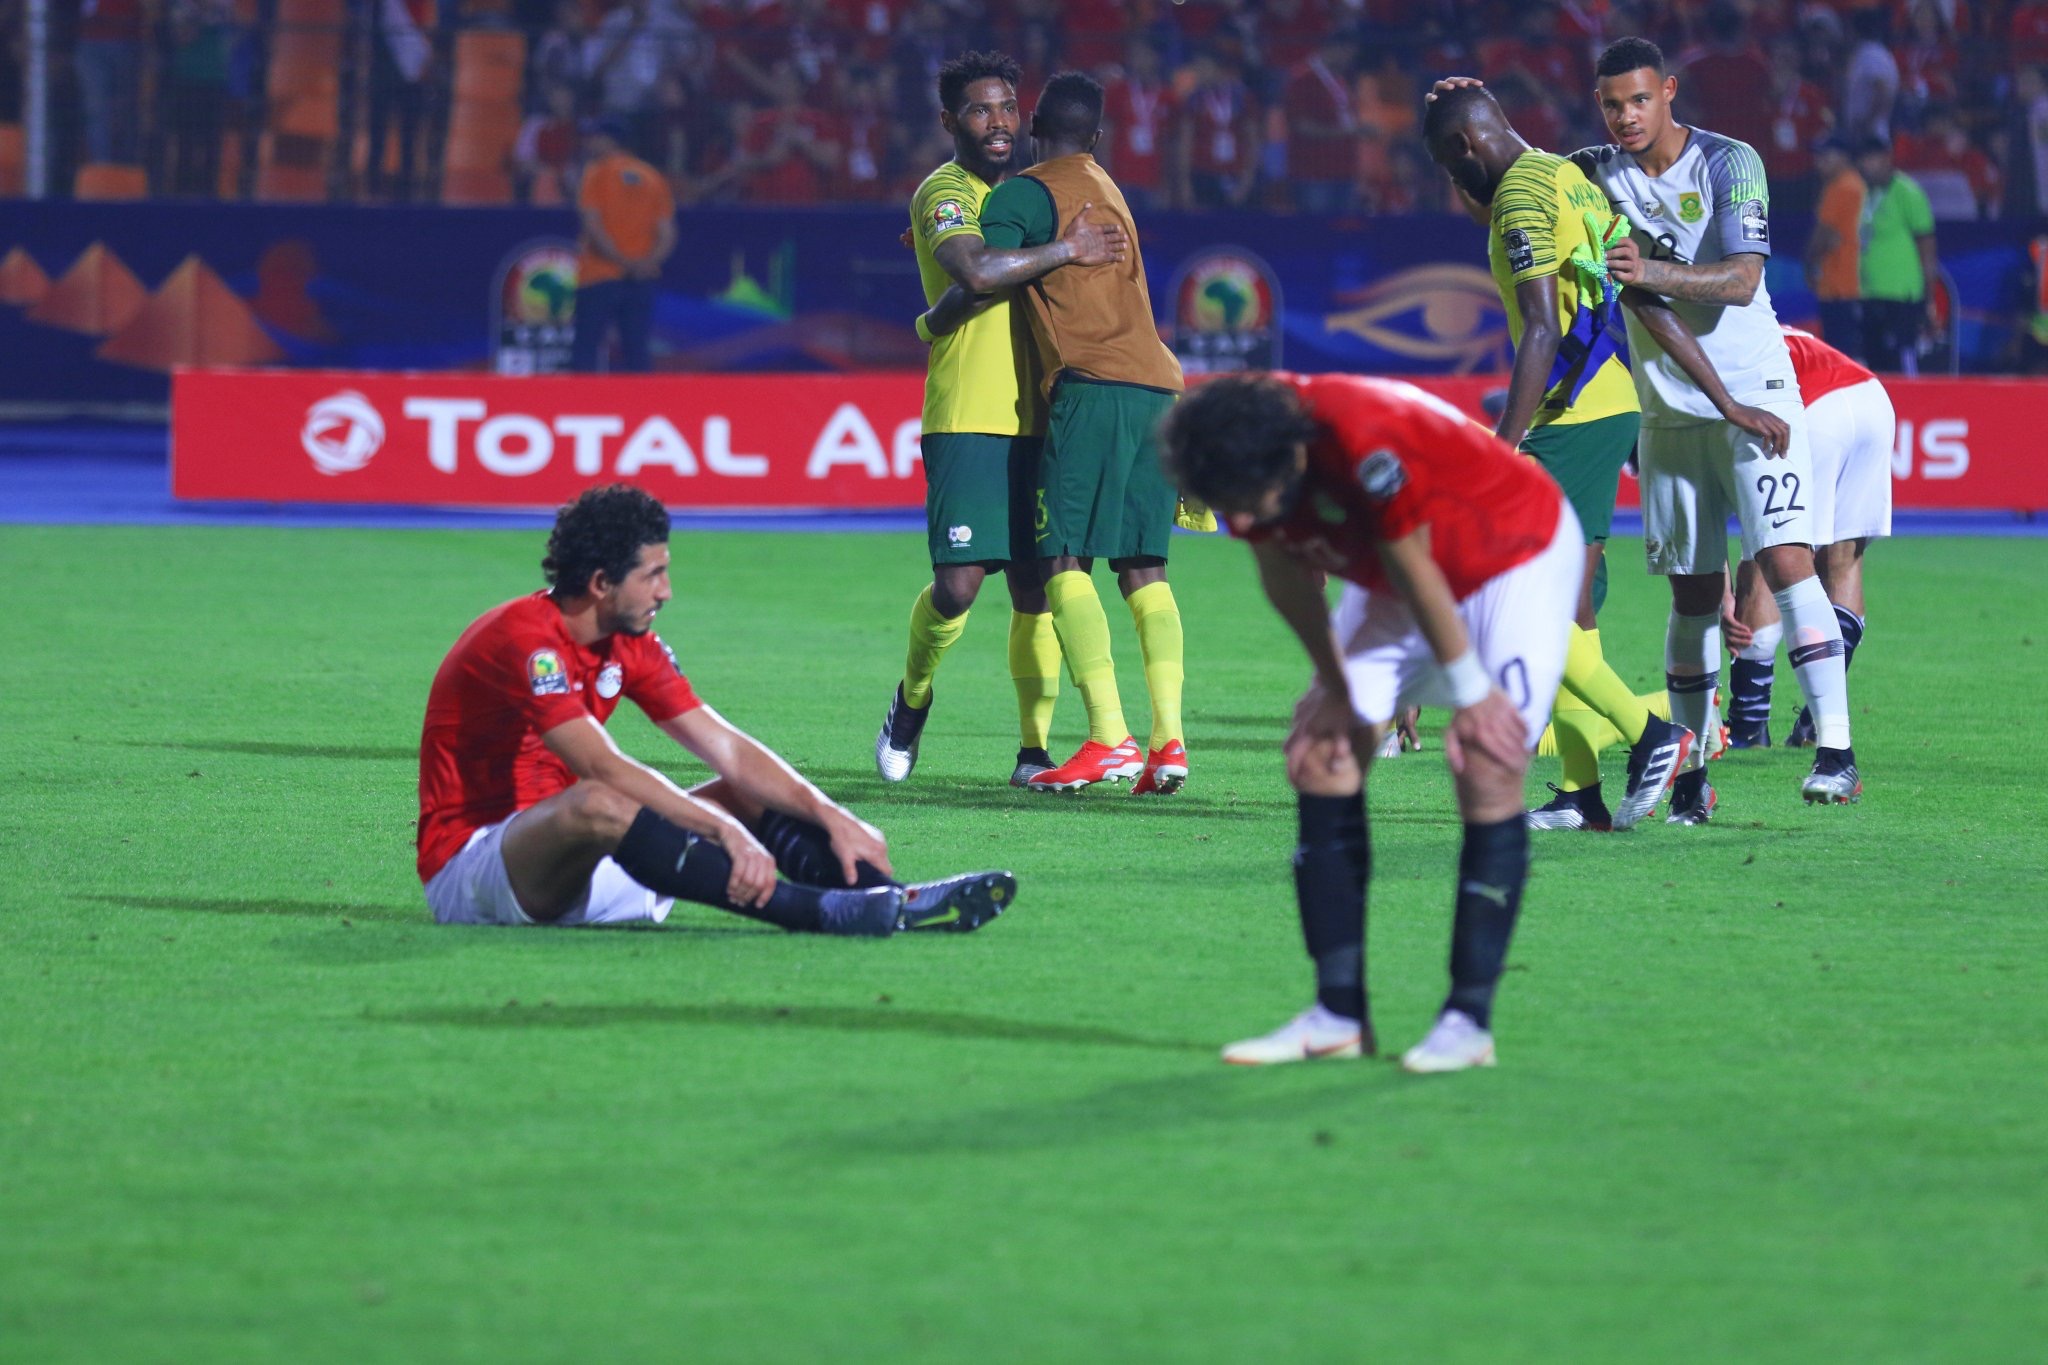 #CAN2019 - Égypte, le grand ménage après l'élimination